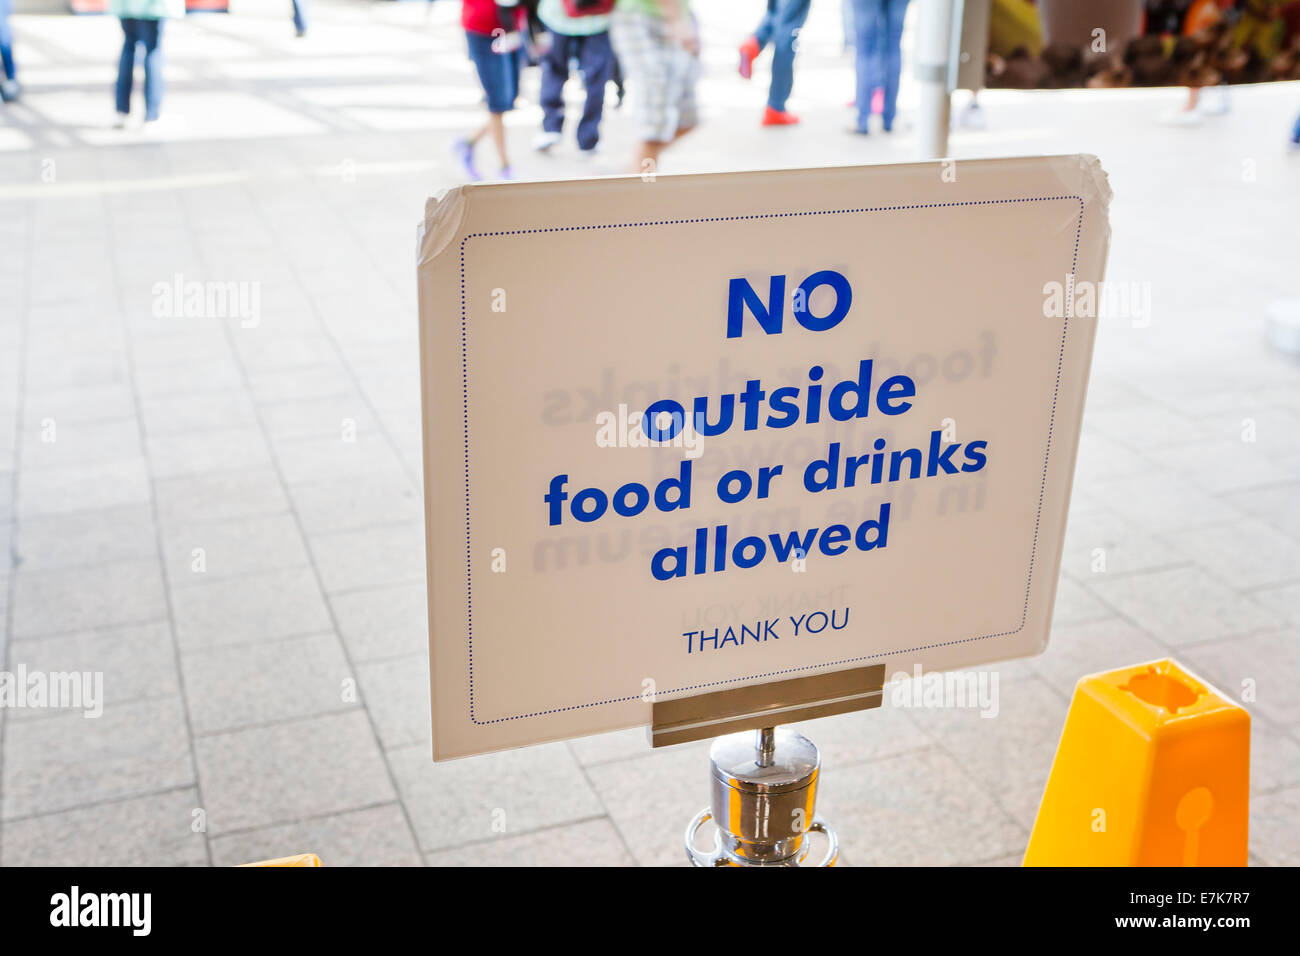 No se permite comida ni bebidas fuera de signo en la cafetería entrada - EE.UU. Foto de stock